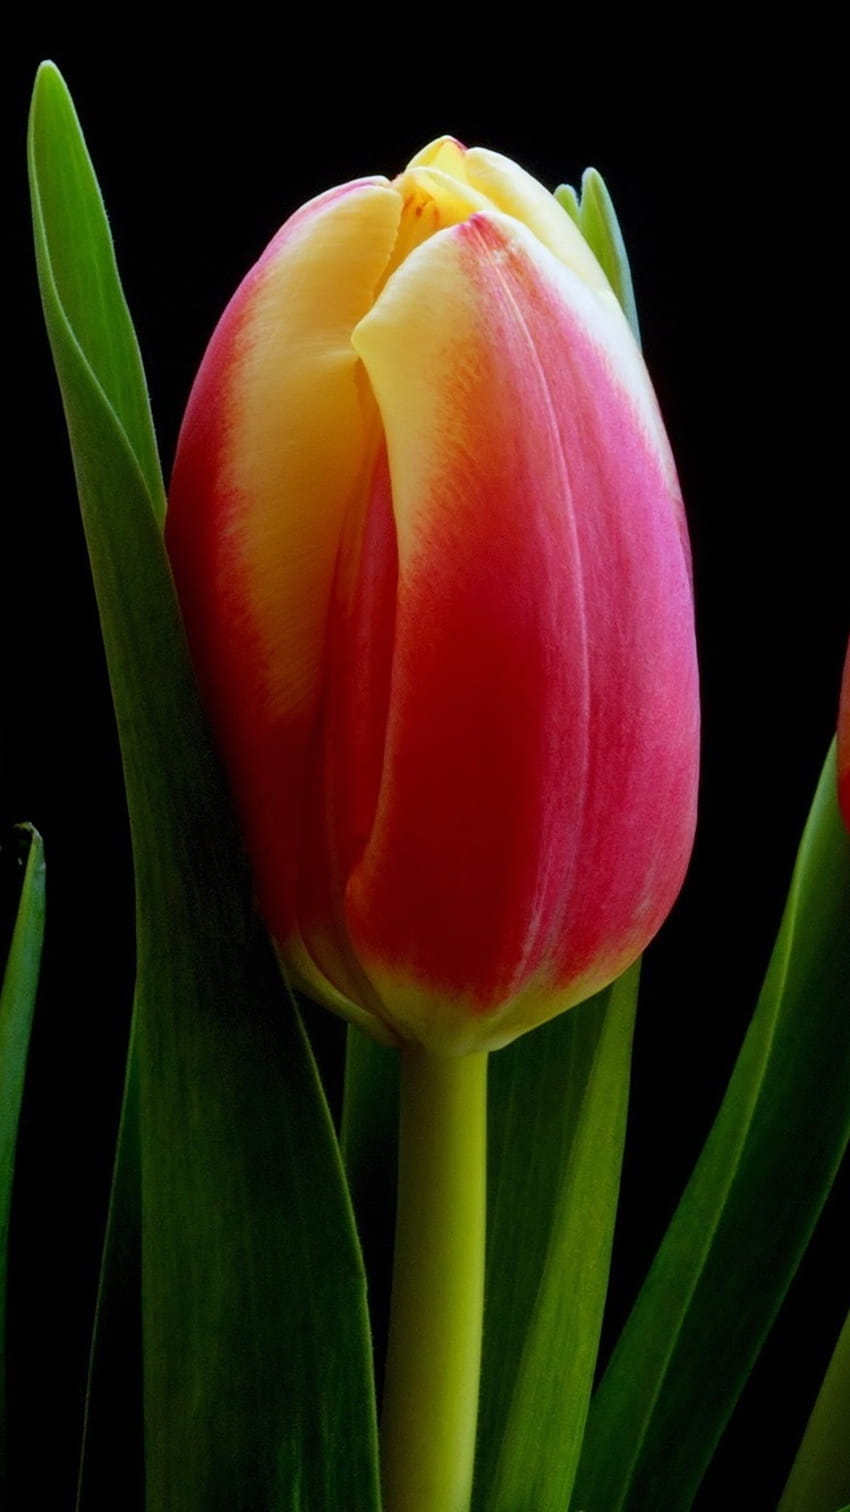 Flores de tulipán rojo naranja amarillo, s negros 2560x1600, iphone de tulipán oscuro fondo de pantalla del teléfono